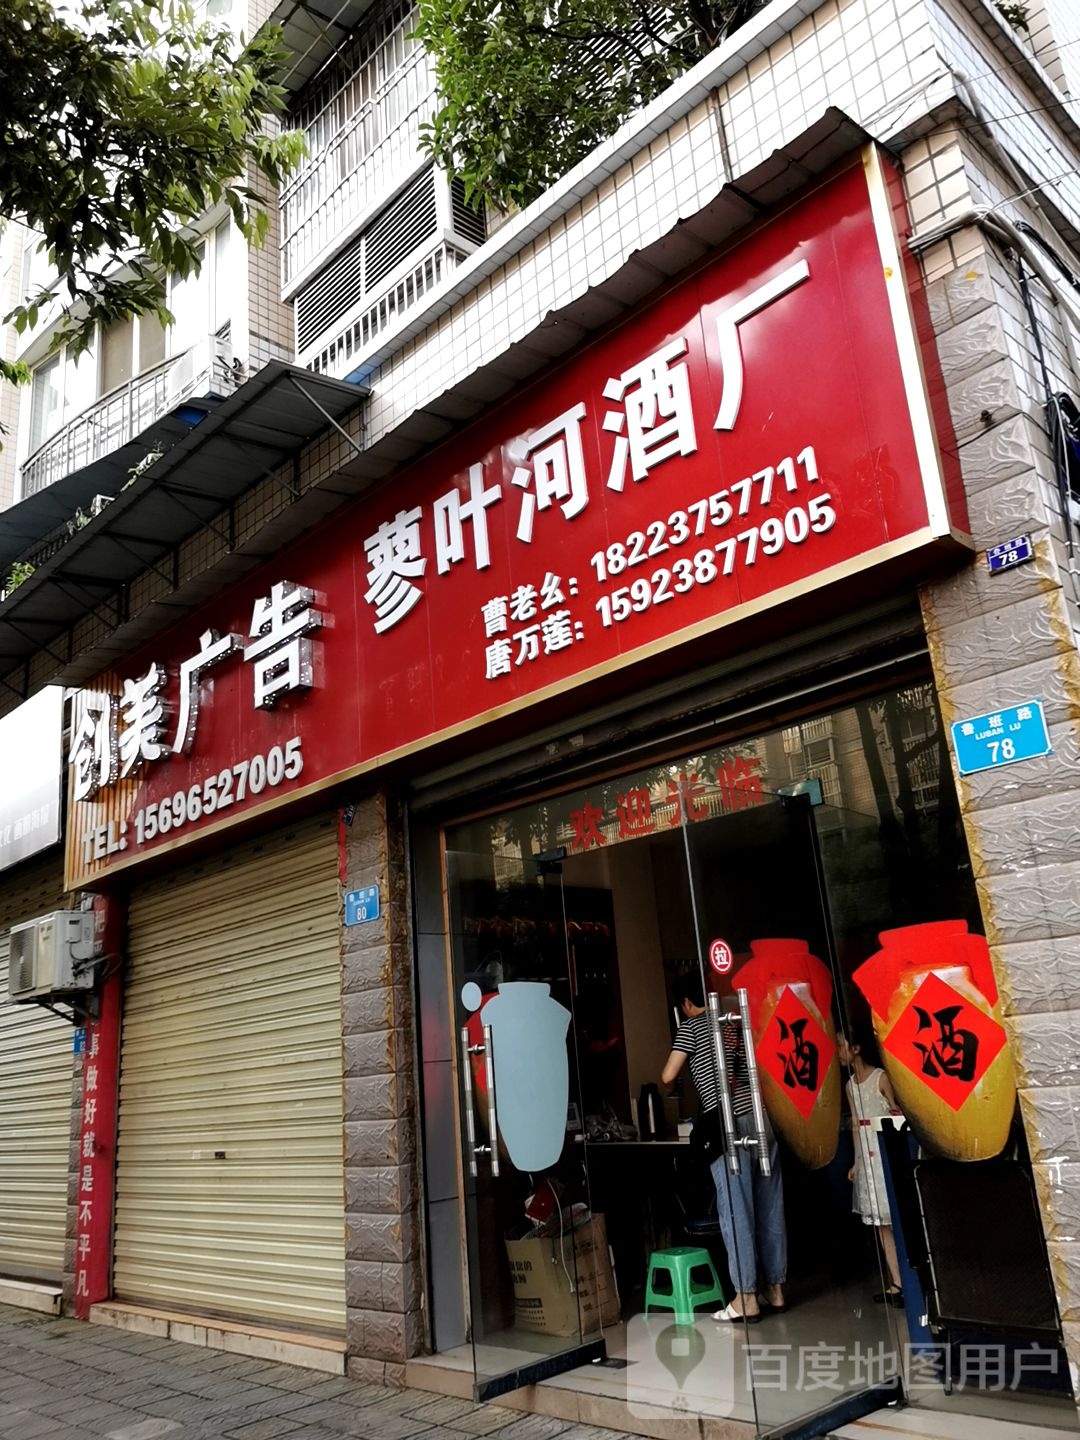 重庆市梁平区油篓巷电信公寓西北侧约90米